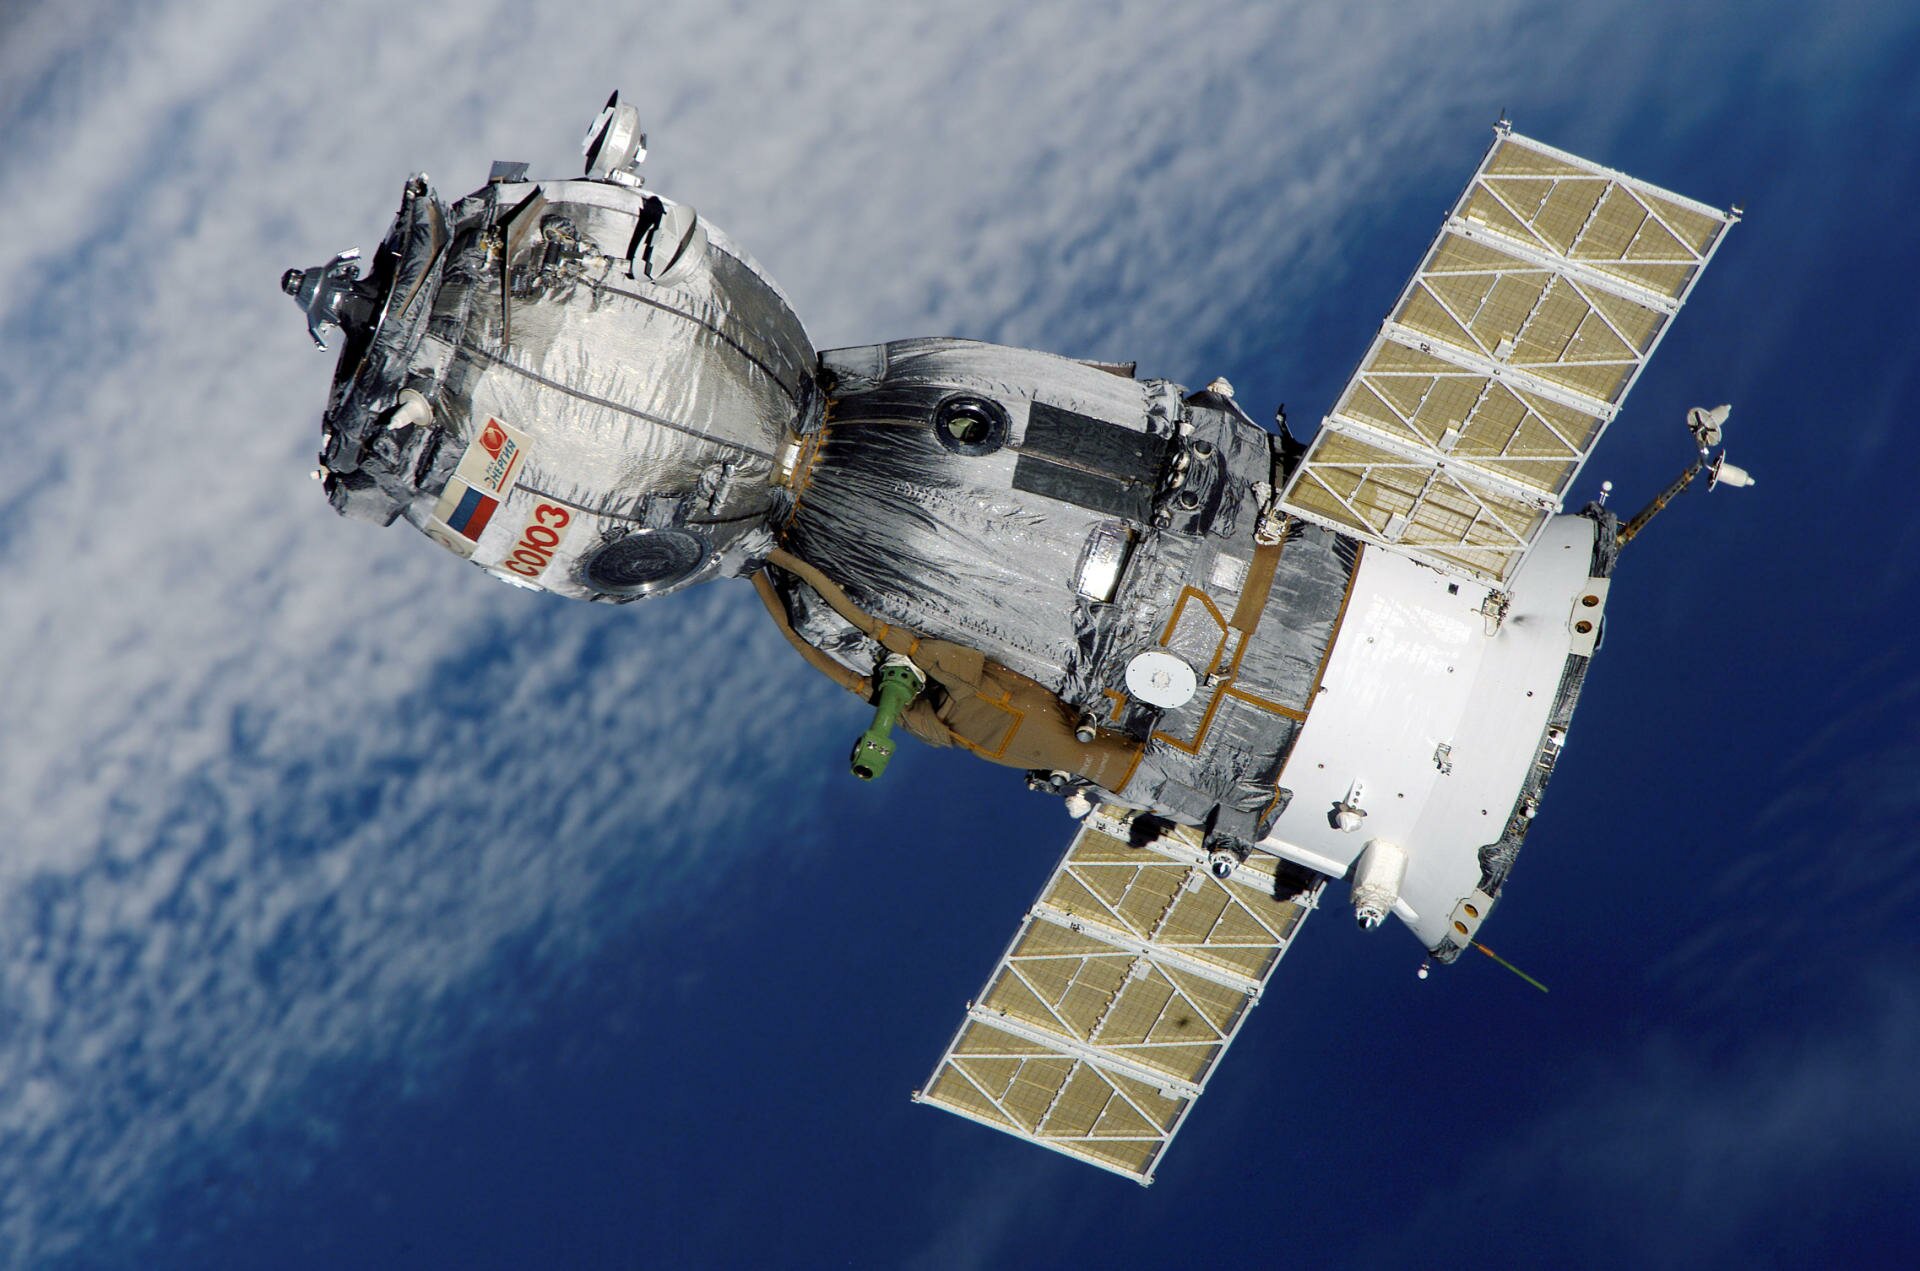 Россия отправит на МКС корабль имени Гагарина